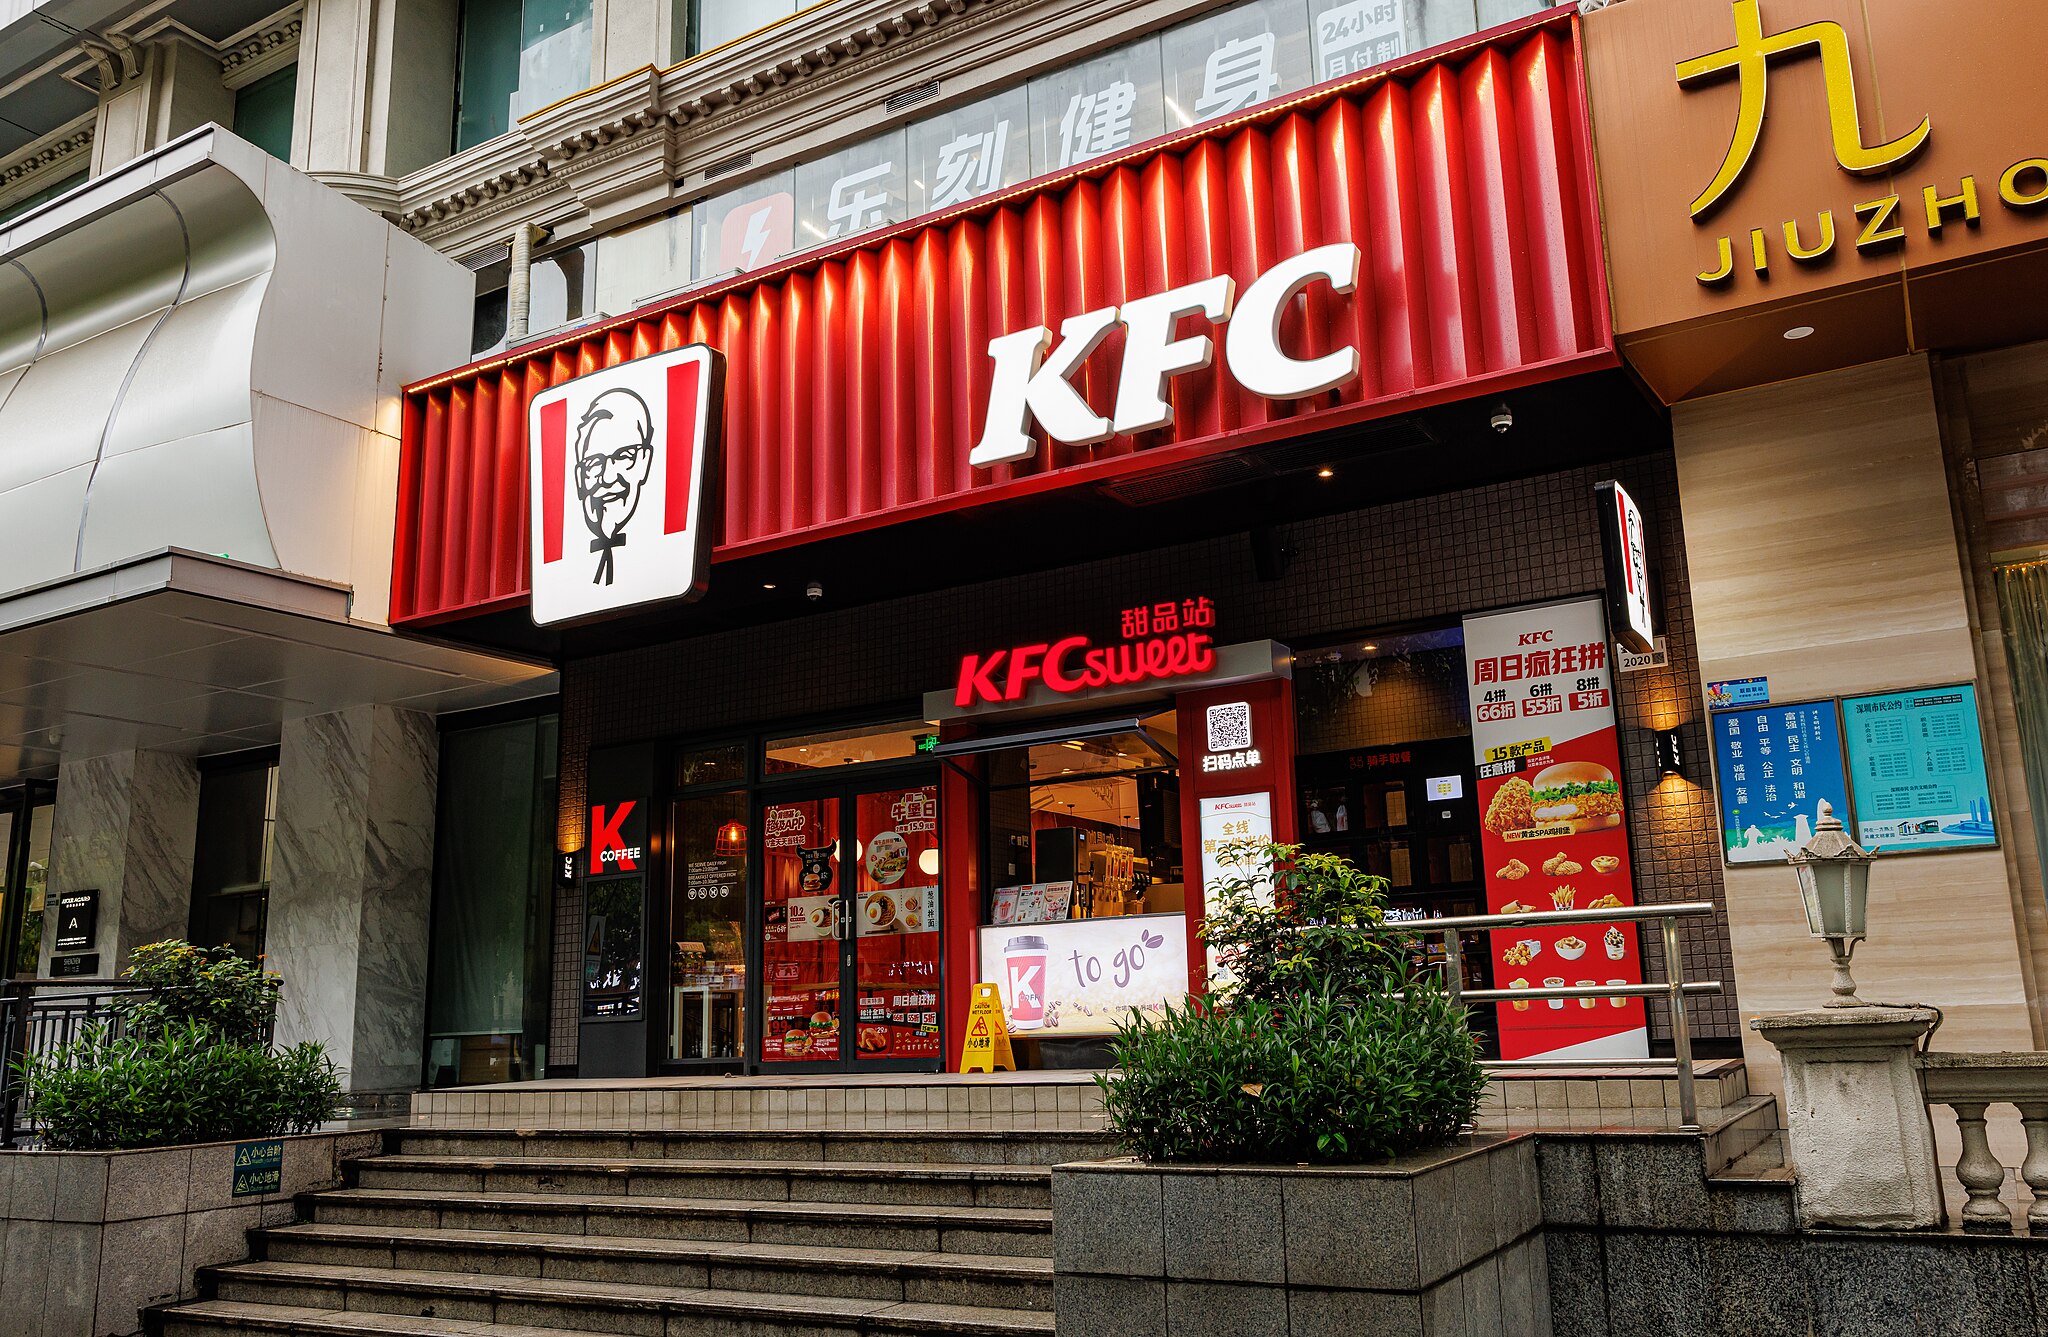 KFC RESTAURANT IN CHINA (2)